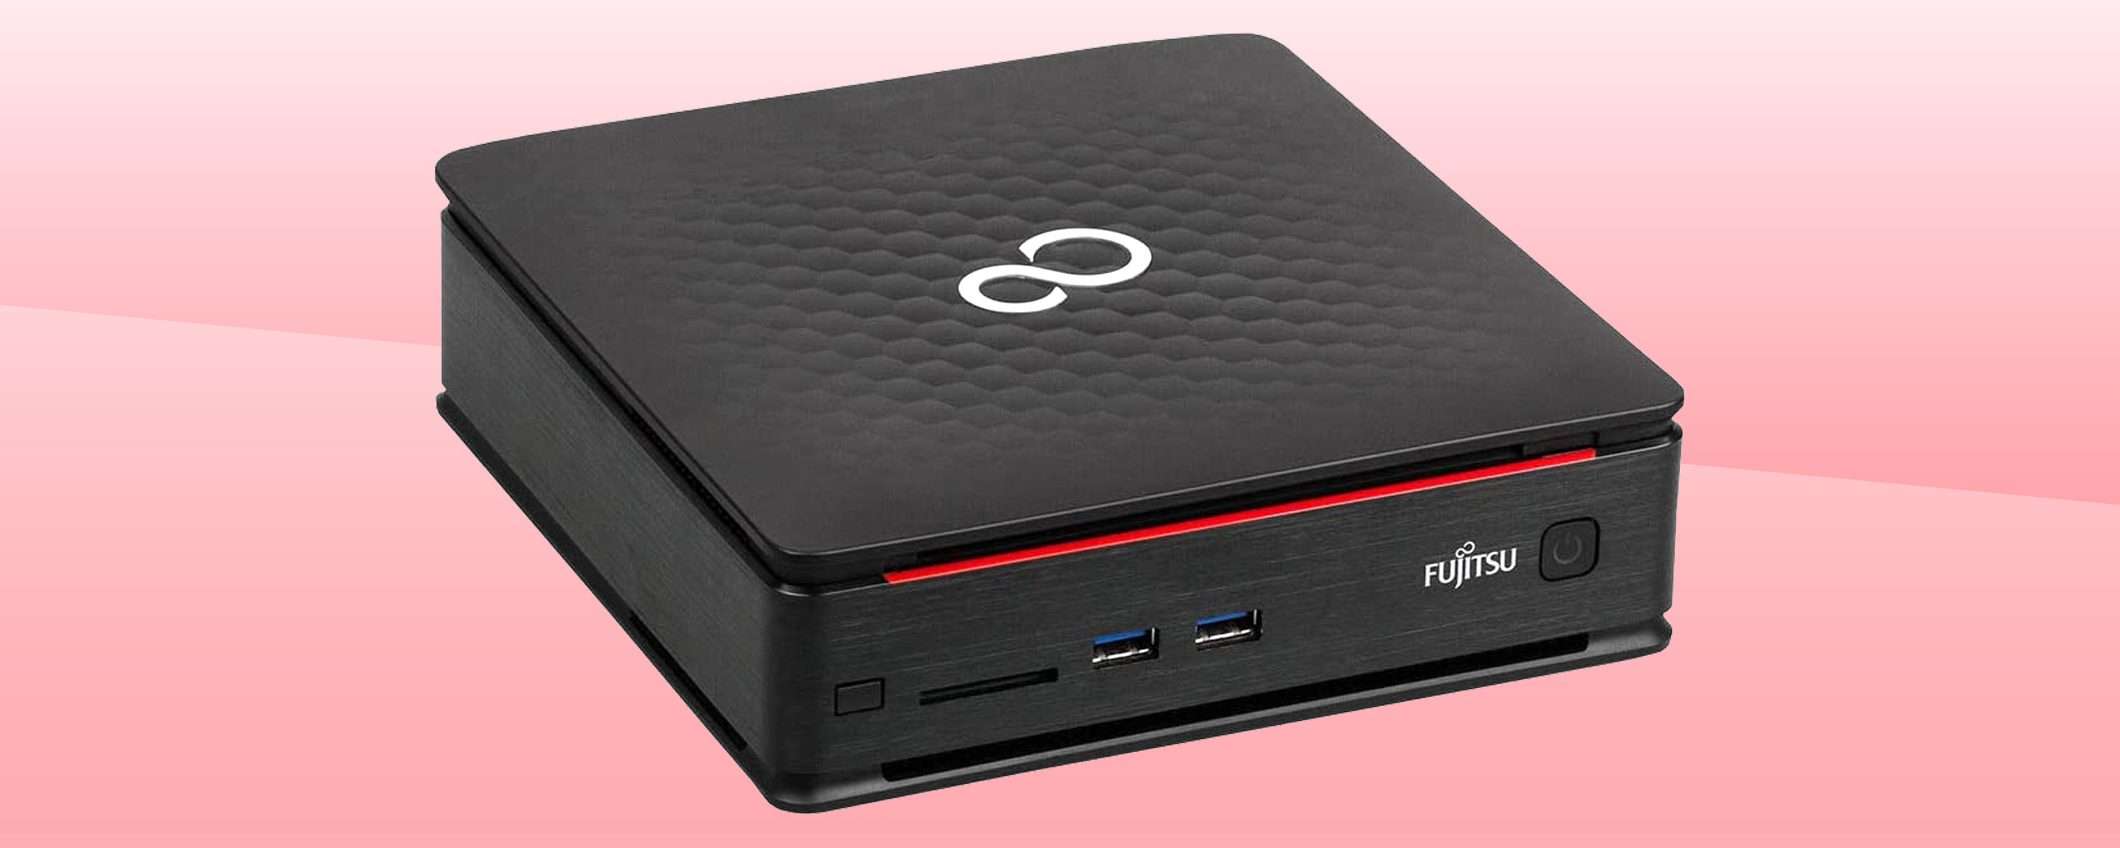 Fujitsu Esprimo: il Mini PC più venduto a prezzo stracciato